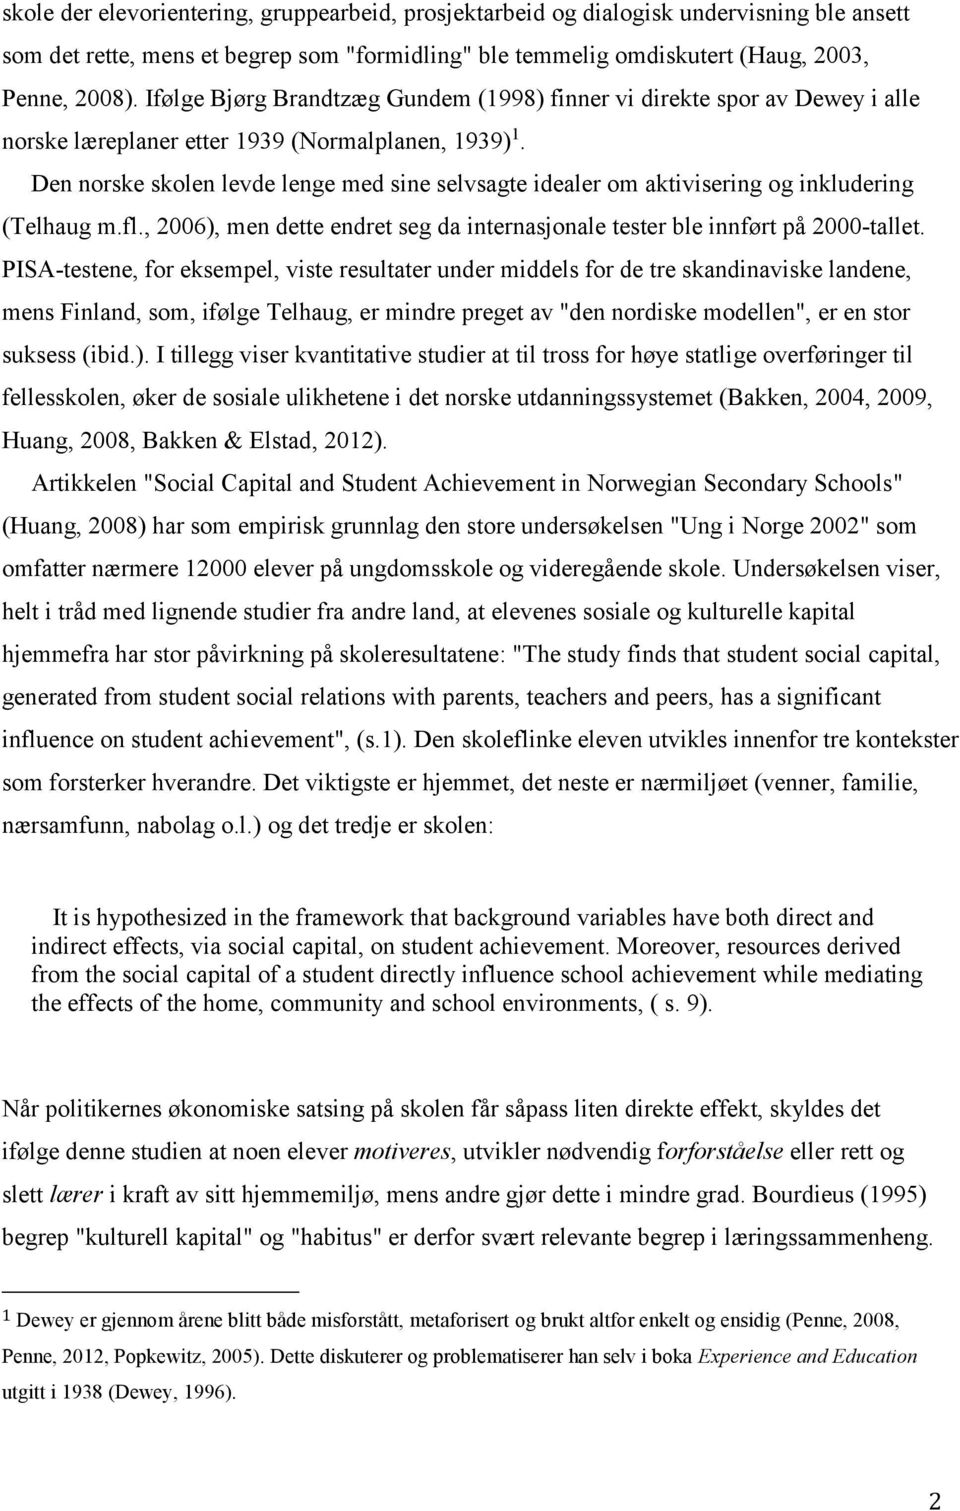 Den norske skolen levde lenge med sine selvsagte idealer om aktivisering og inkludering (Telhaug m.fl., 2006), men dette endret seg da internasjonale tester ble innført på 2000-tallet.